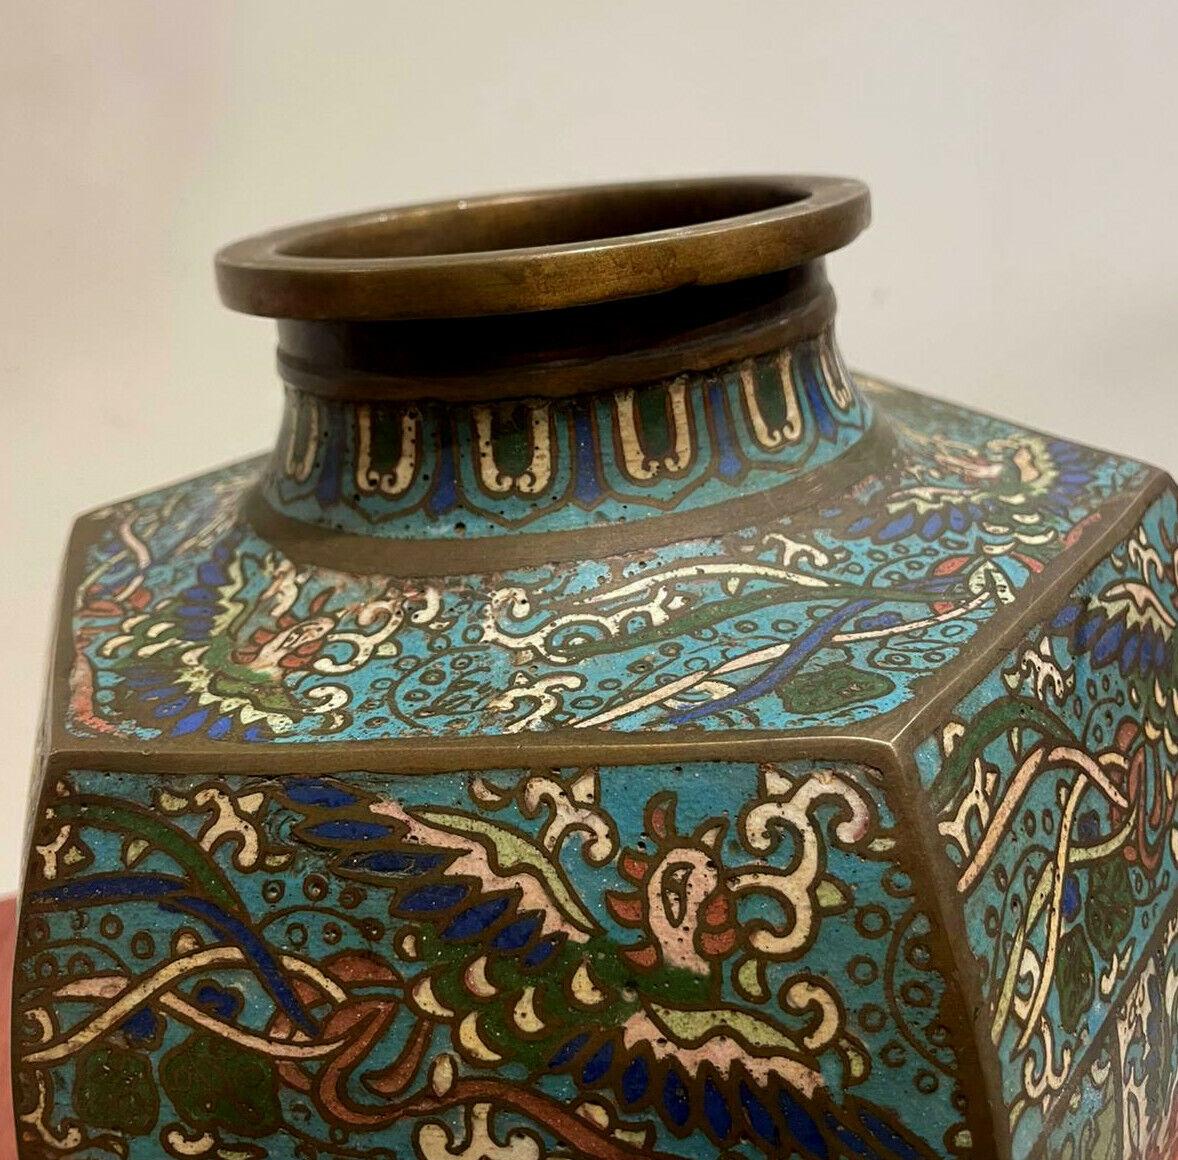 
Antike Vase aus der Mitte des XIX. Jahrhunderts aus der chinesischen Qing-Dynastie
Cloisonné-Emaille & Bronze

Die Vase ist mit Phönixen und Kranichen verziert,
der Erneuerung und Wiedergeburt symbolisiert
& weiter verziert mit floralem Motiv

35cm